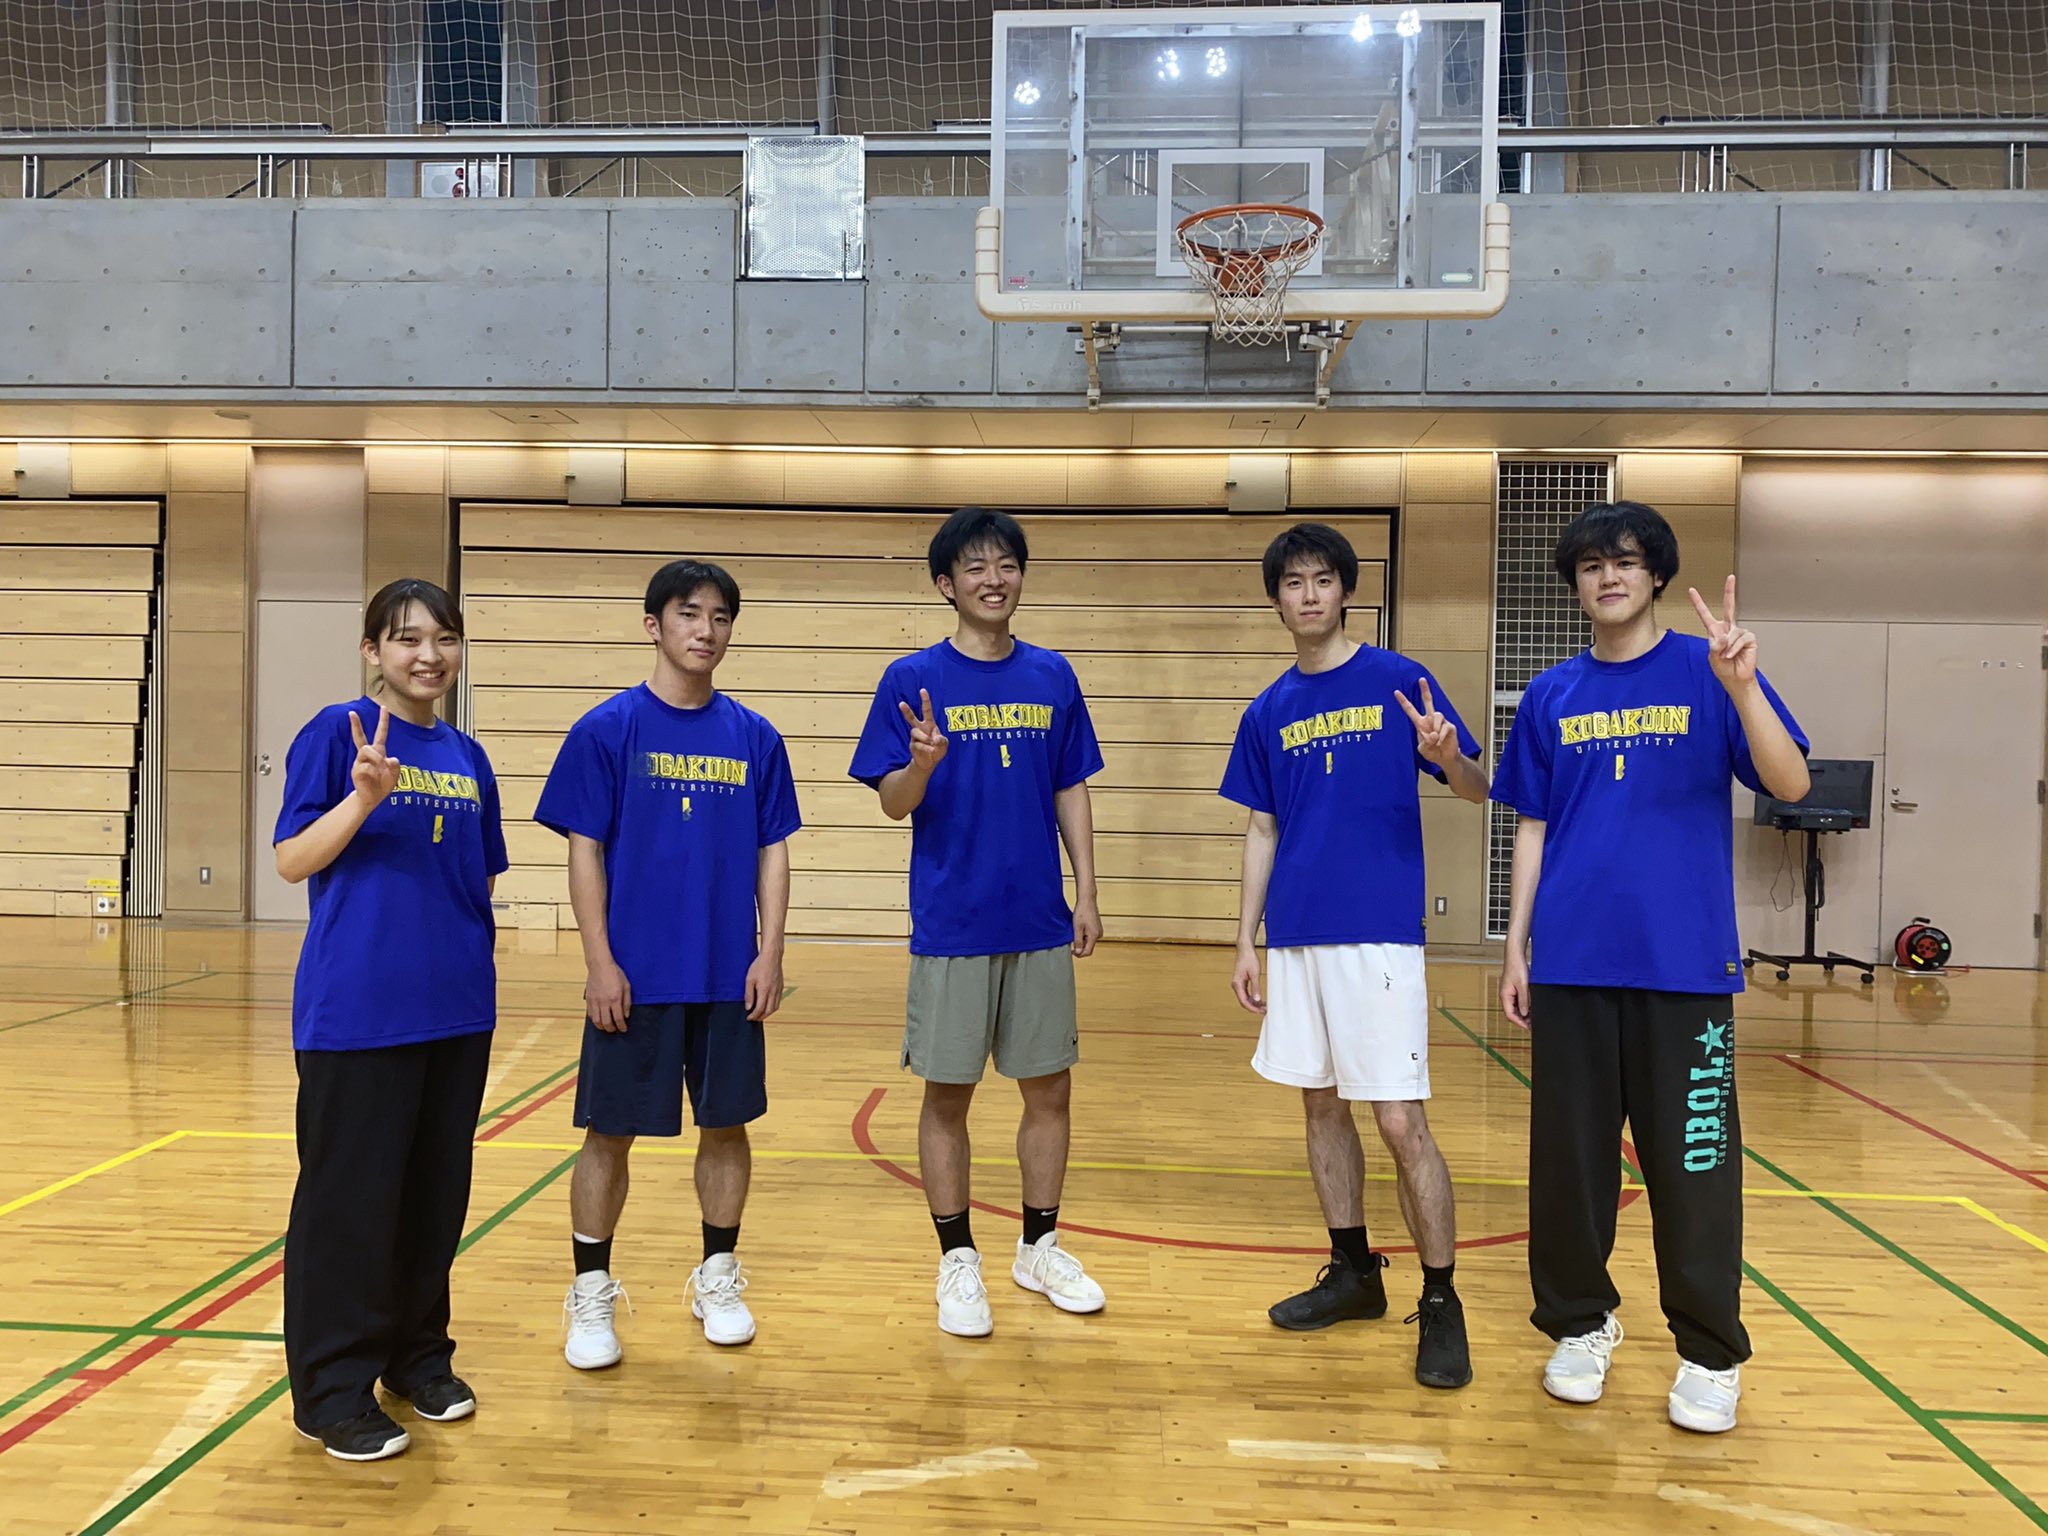 工学院大学バスケットボール部 Kogakuinbasket Twitter